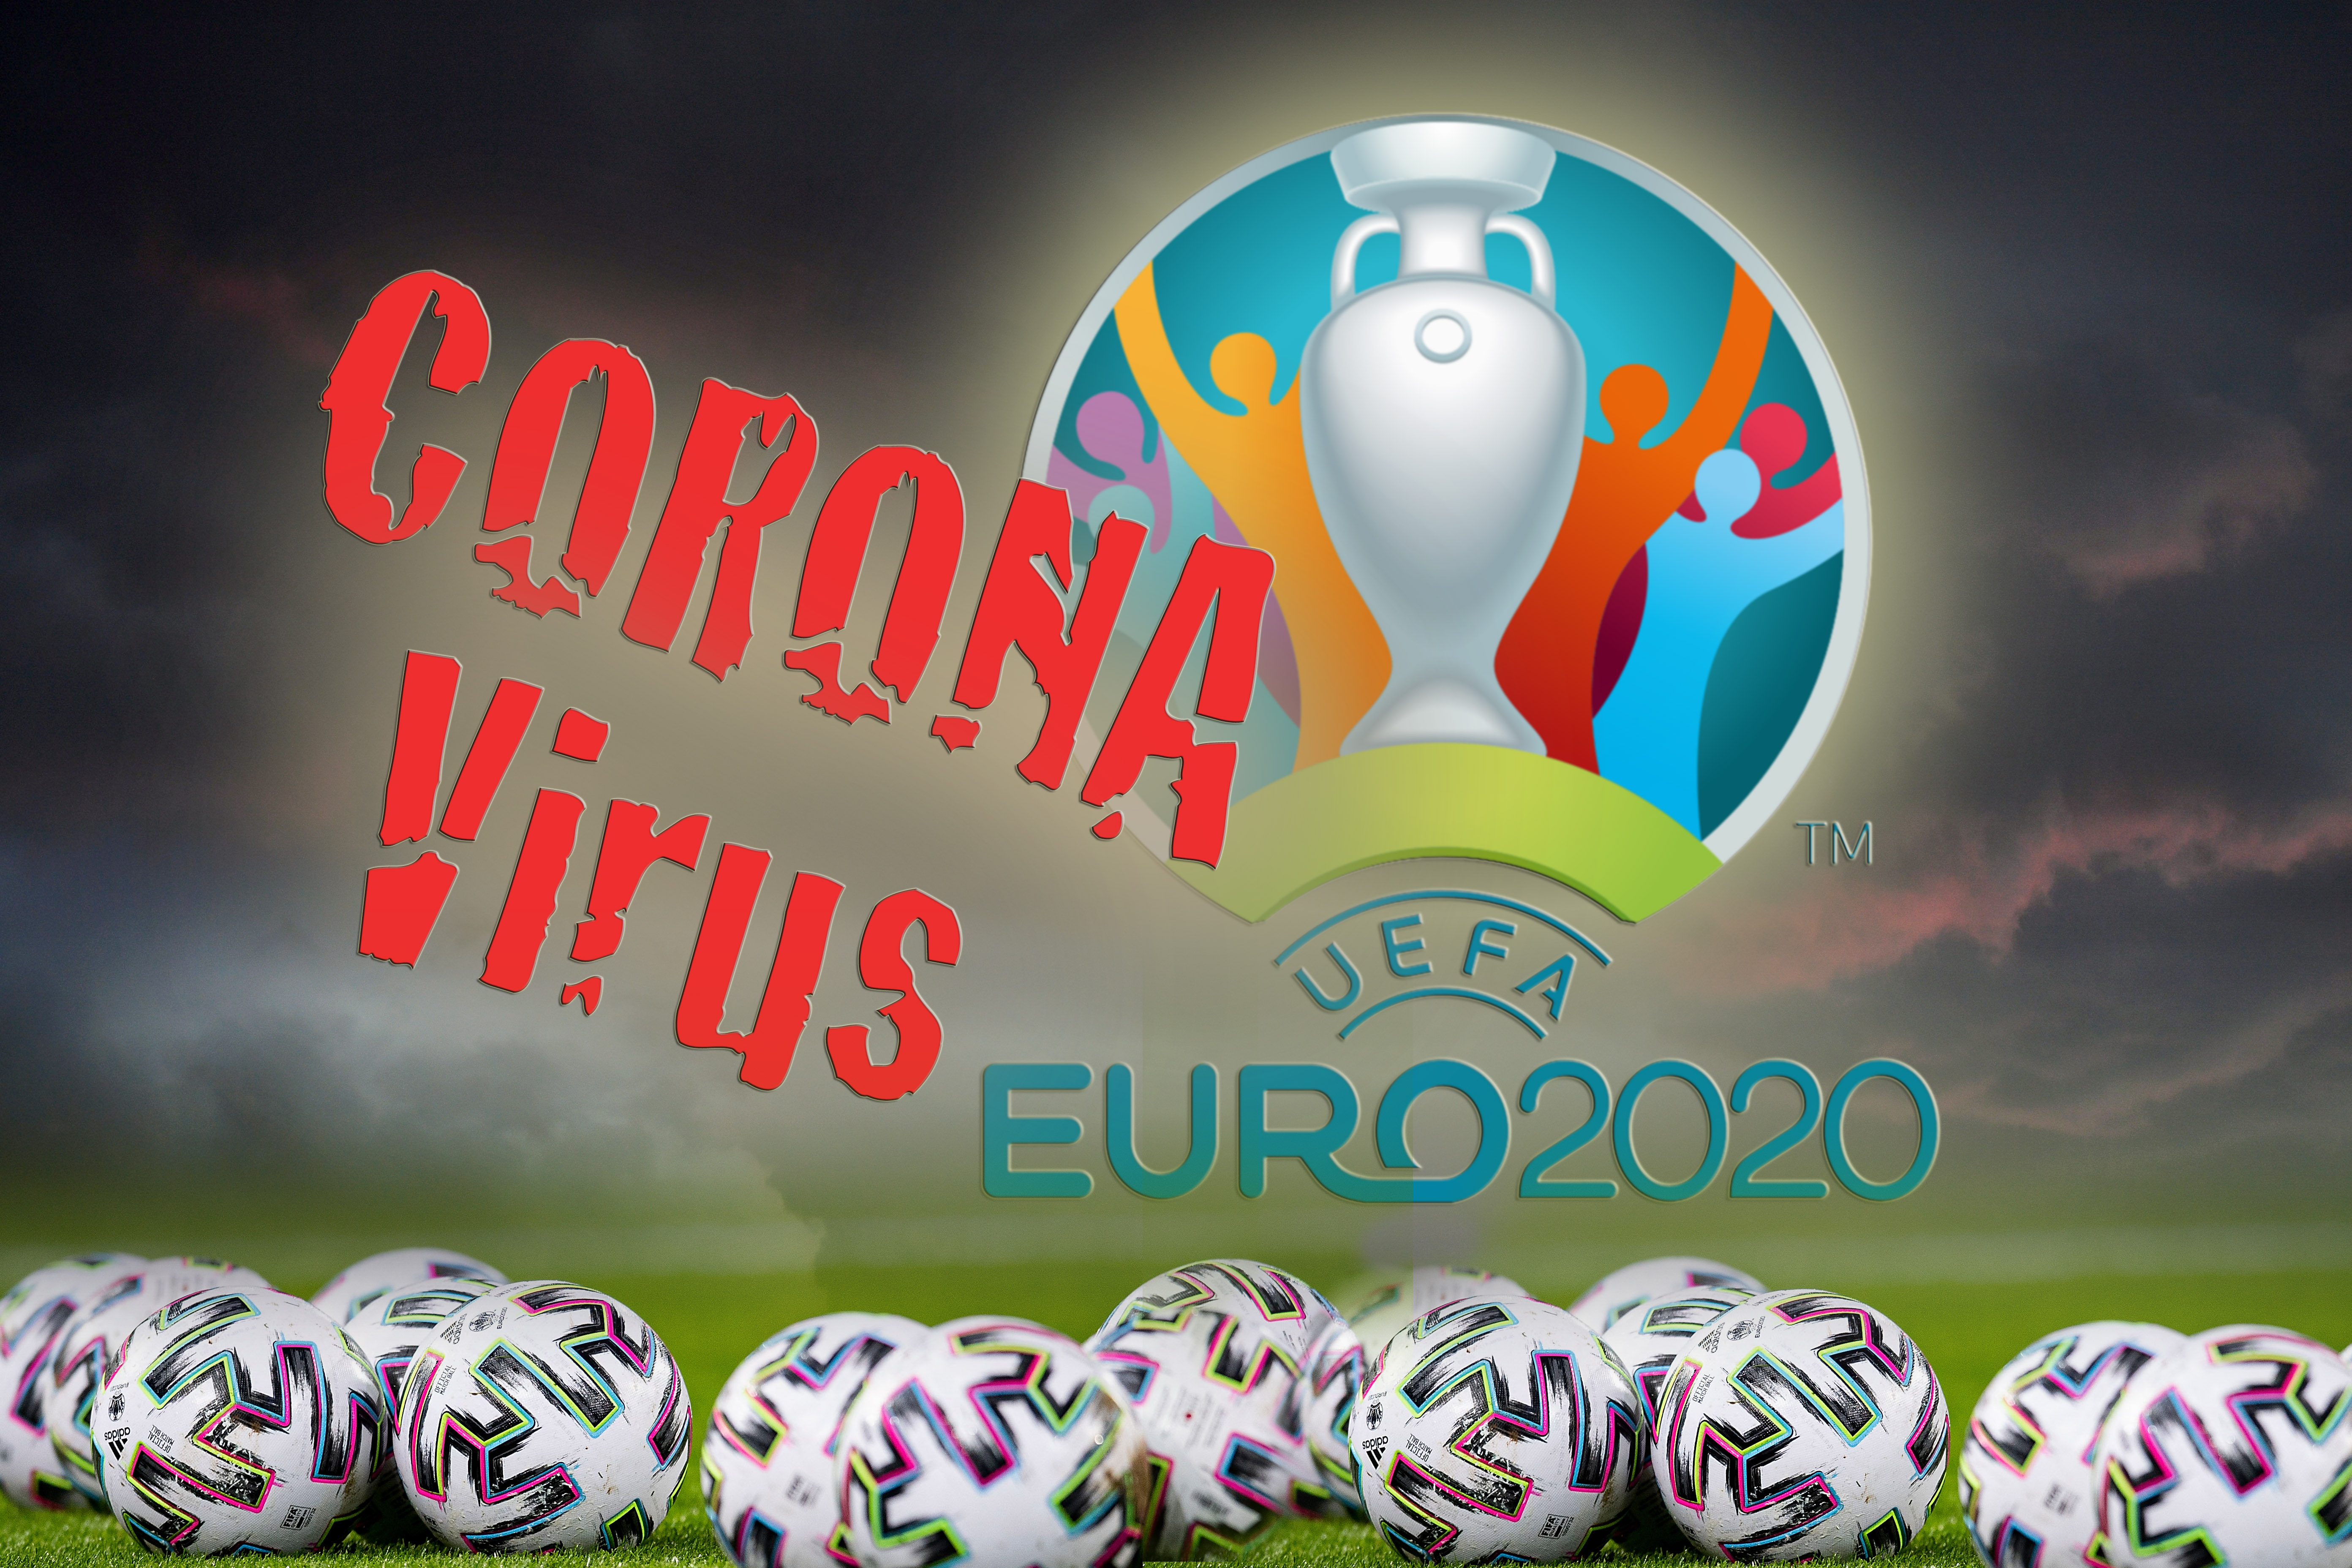 Foci Eb 2021: négy alternatívát hozott létre az UEFA a szurkolókkal  kapcsolatban, a koronavírustól függ, melyiket alkalmazzák - Sportal.hu